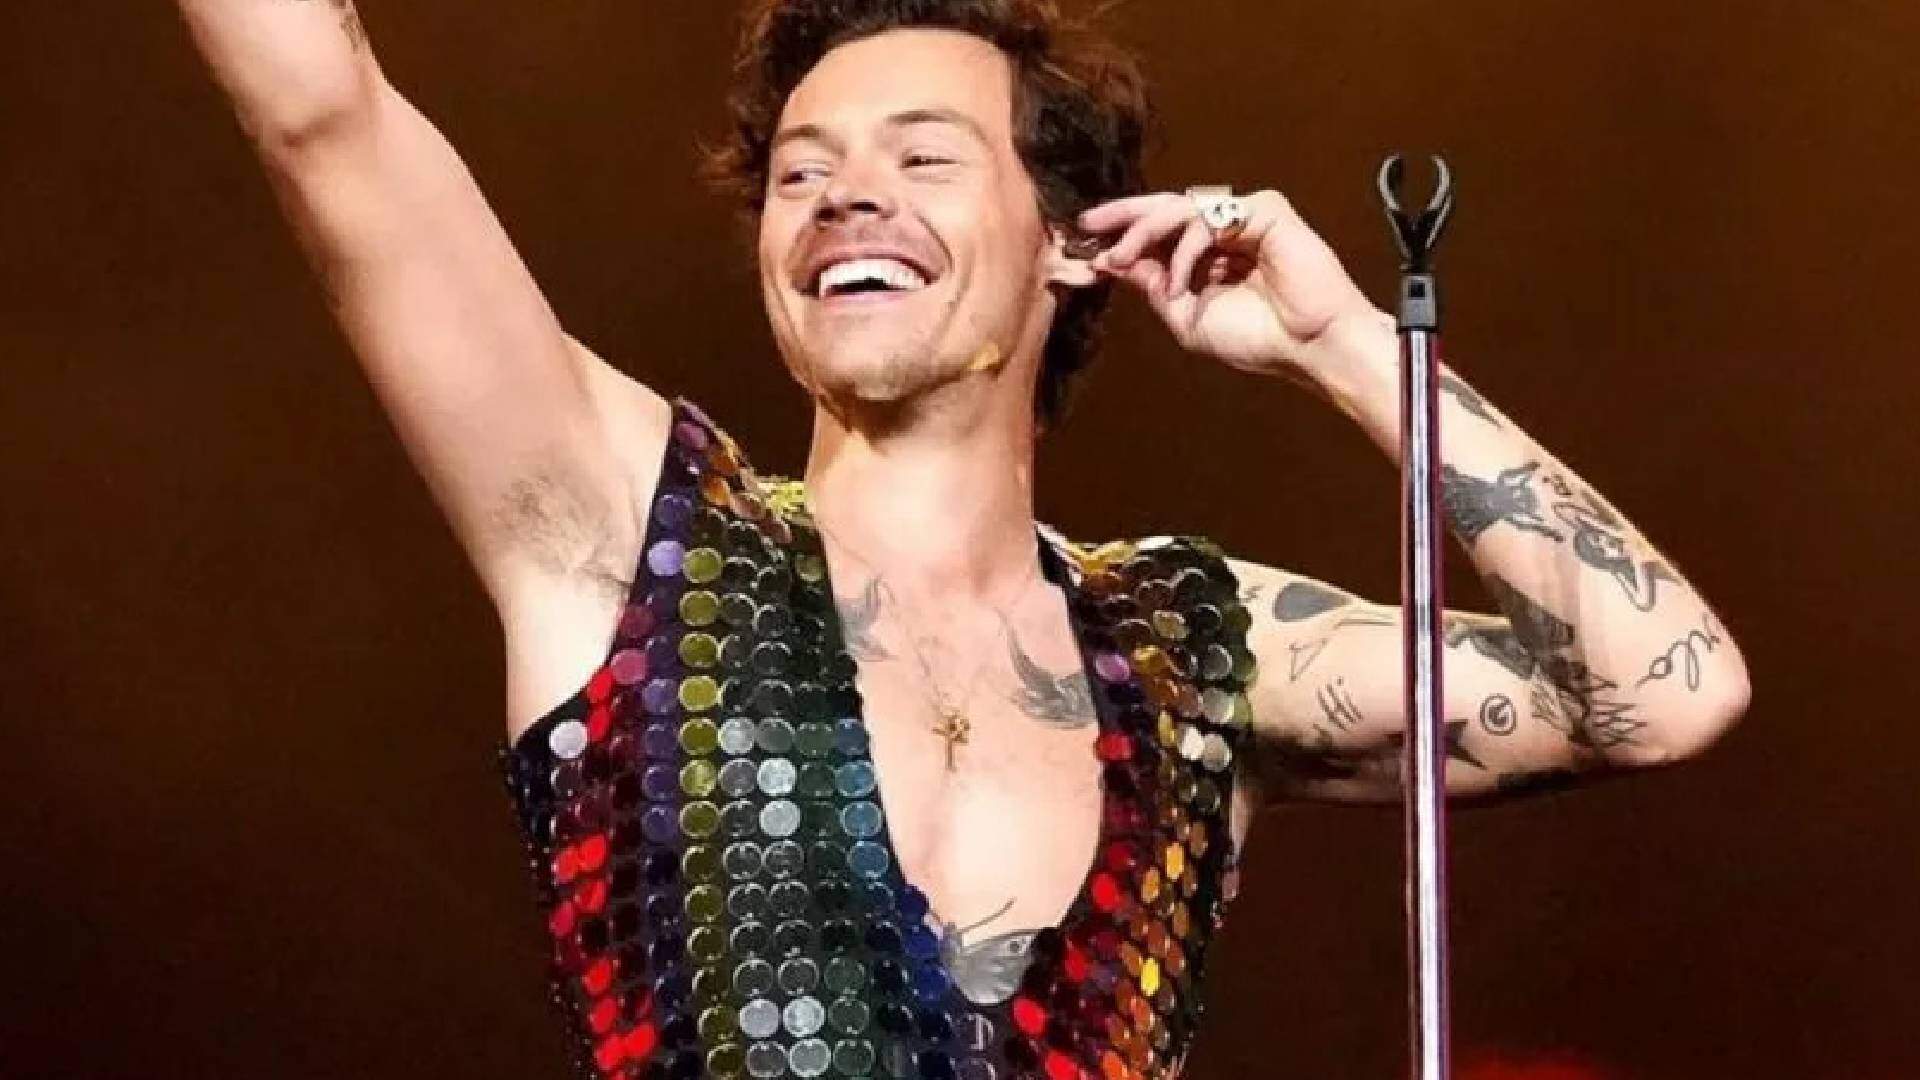 Harry Styles rasga a calça durante show em São Paulo e cena viraliza na web